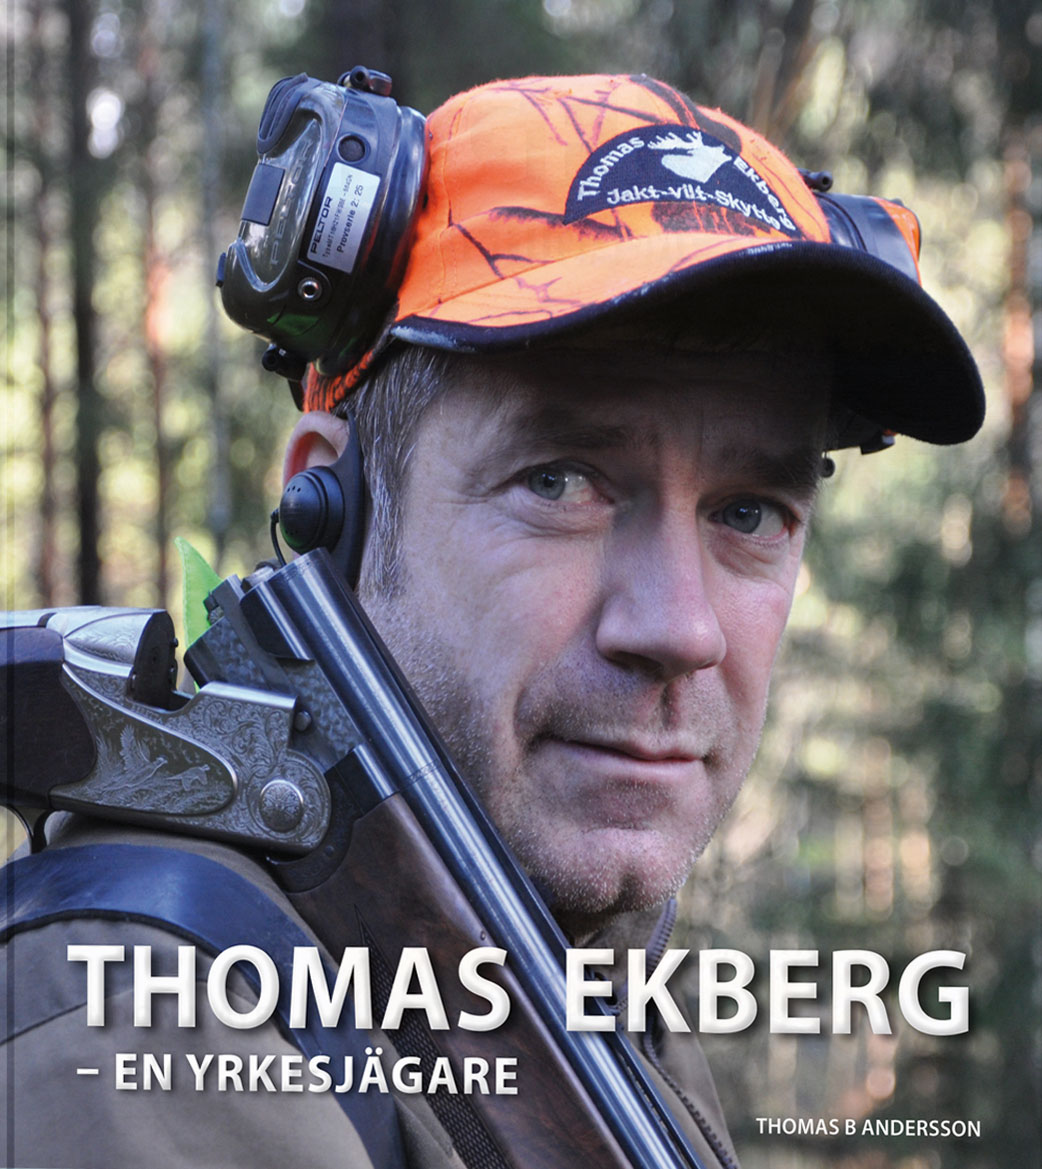 THOMAS EKBERG - en yrkesjägare